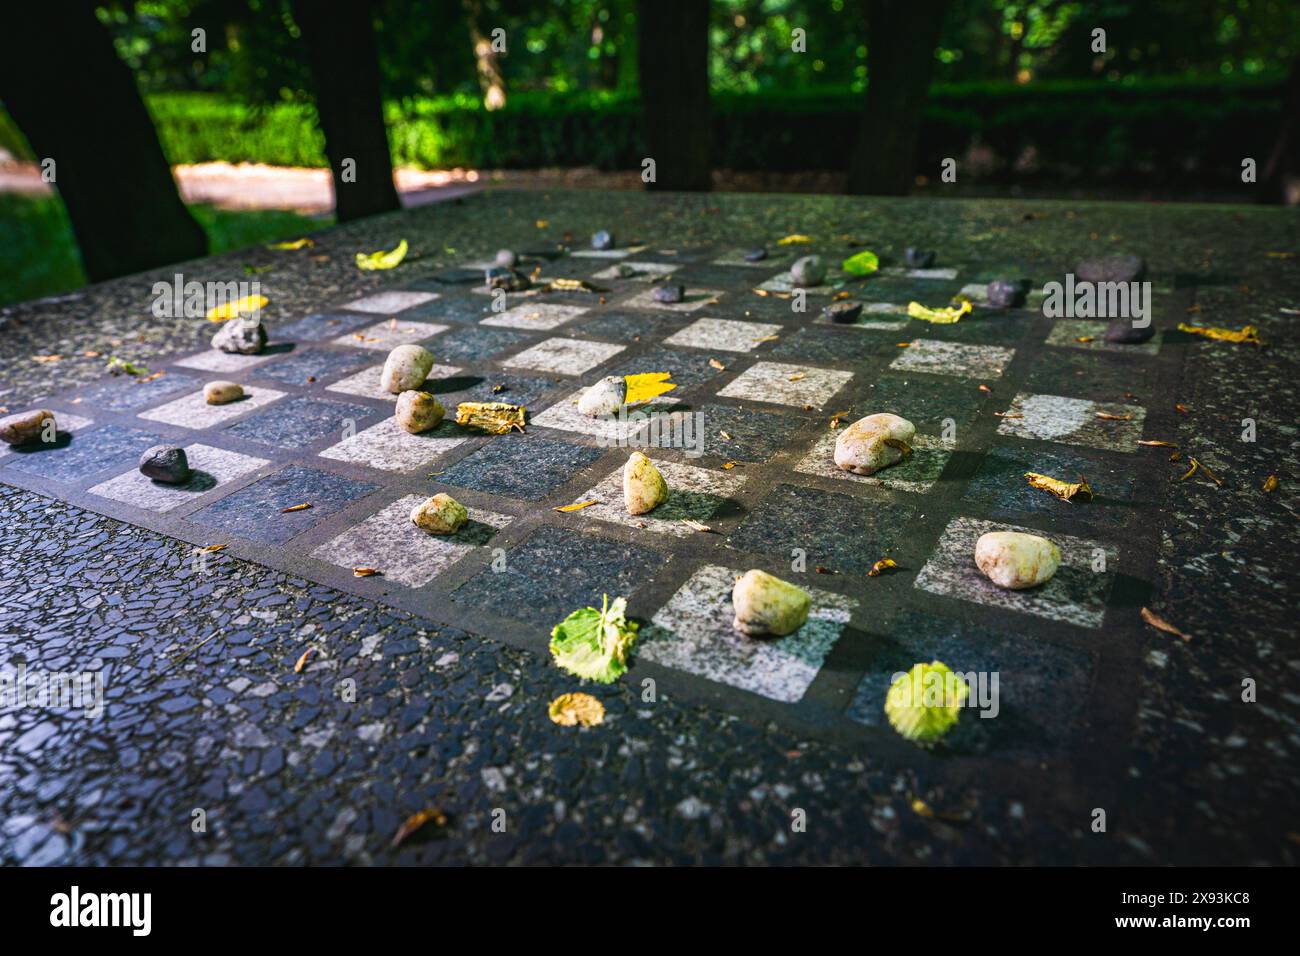 Gros plan d'un échiquier dans un parc avec des morceaux de roches Banque D'Images